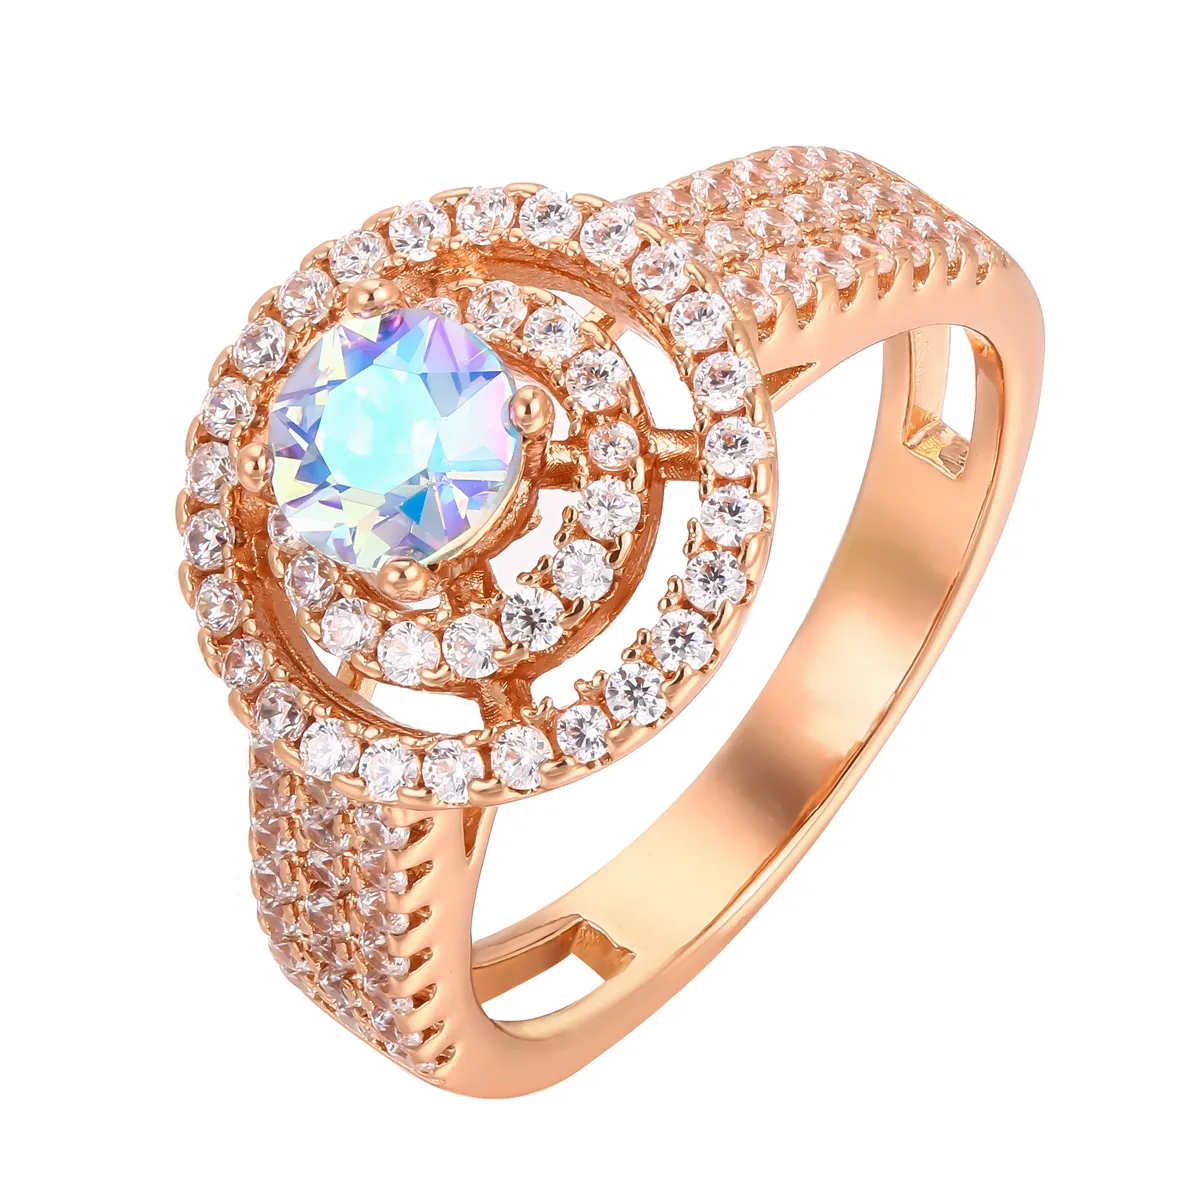 कस्टम ज्वेलरी नई आगमन महिलाओं की अंगूठियां गुलाब सोना मढ़वाया क्रिस्टल अंगूठियां महिलाओं के लिए हीरे की शादी की पीतल की अंगूठी